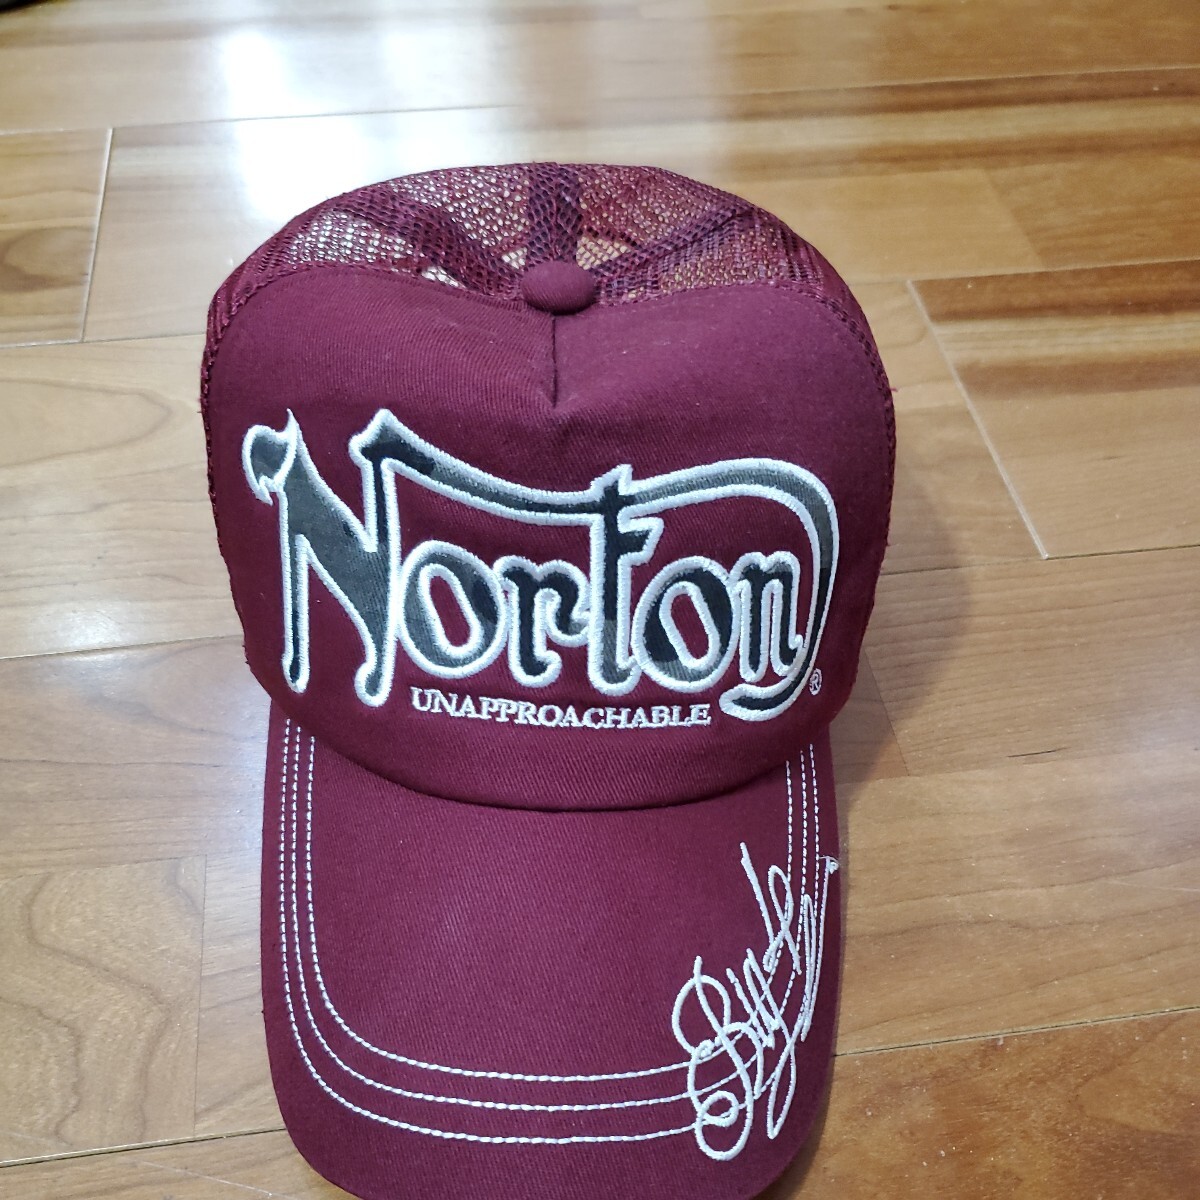 ノートン Norton 帽子 キャップ ハーフメッシュキャップの画像1